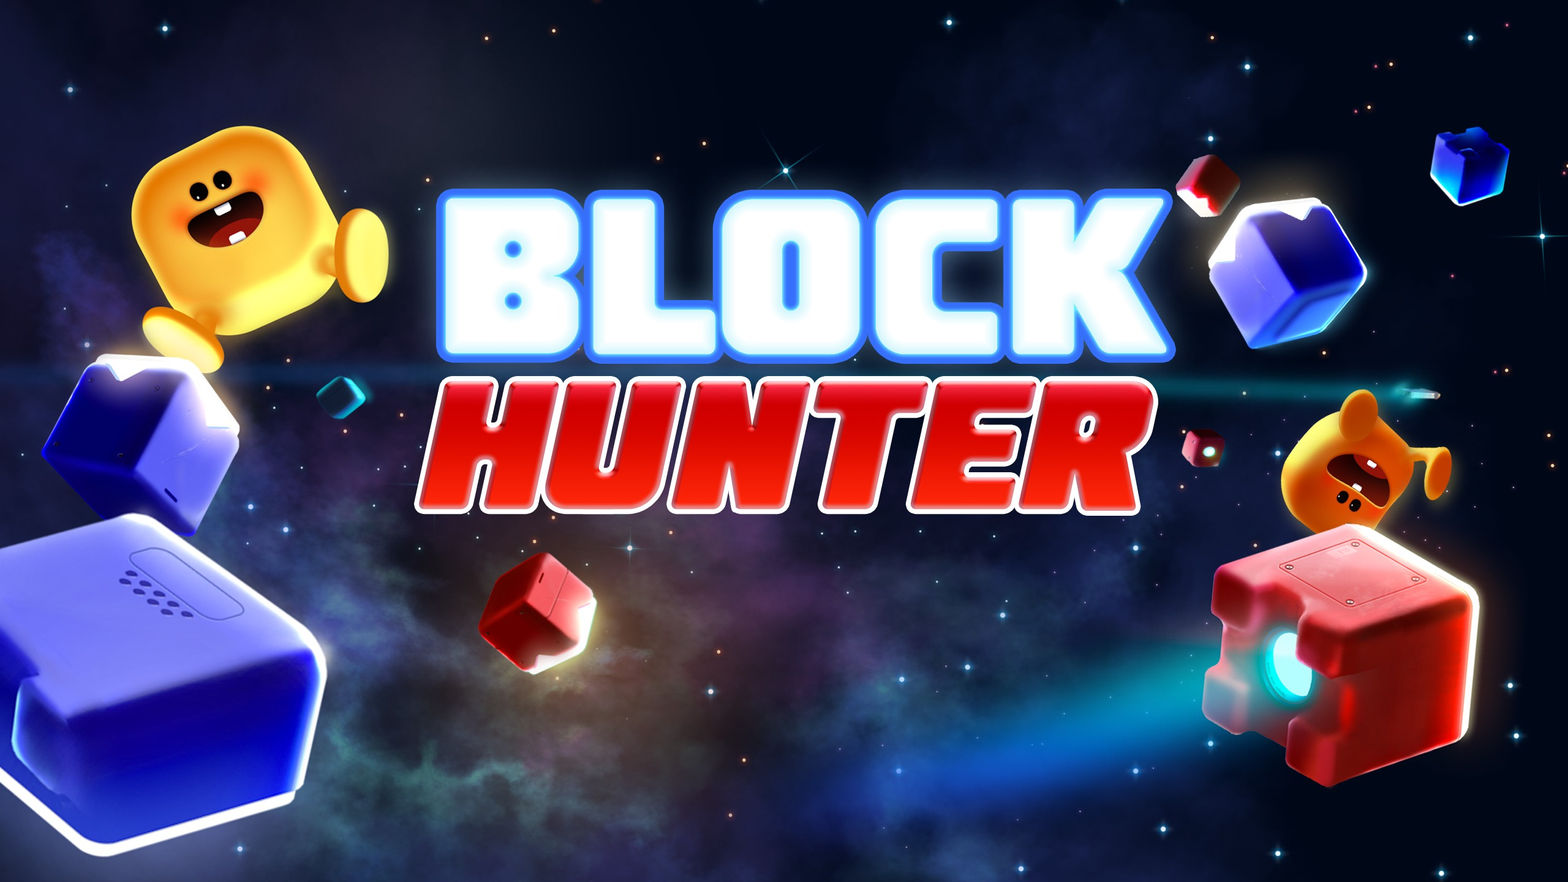 Block Hunter